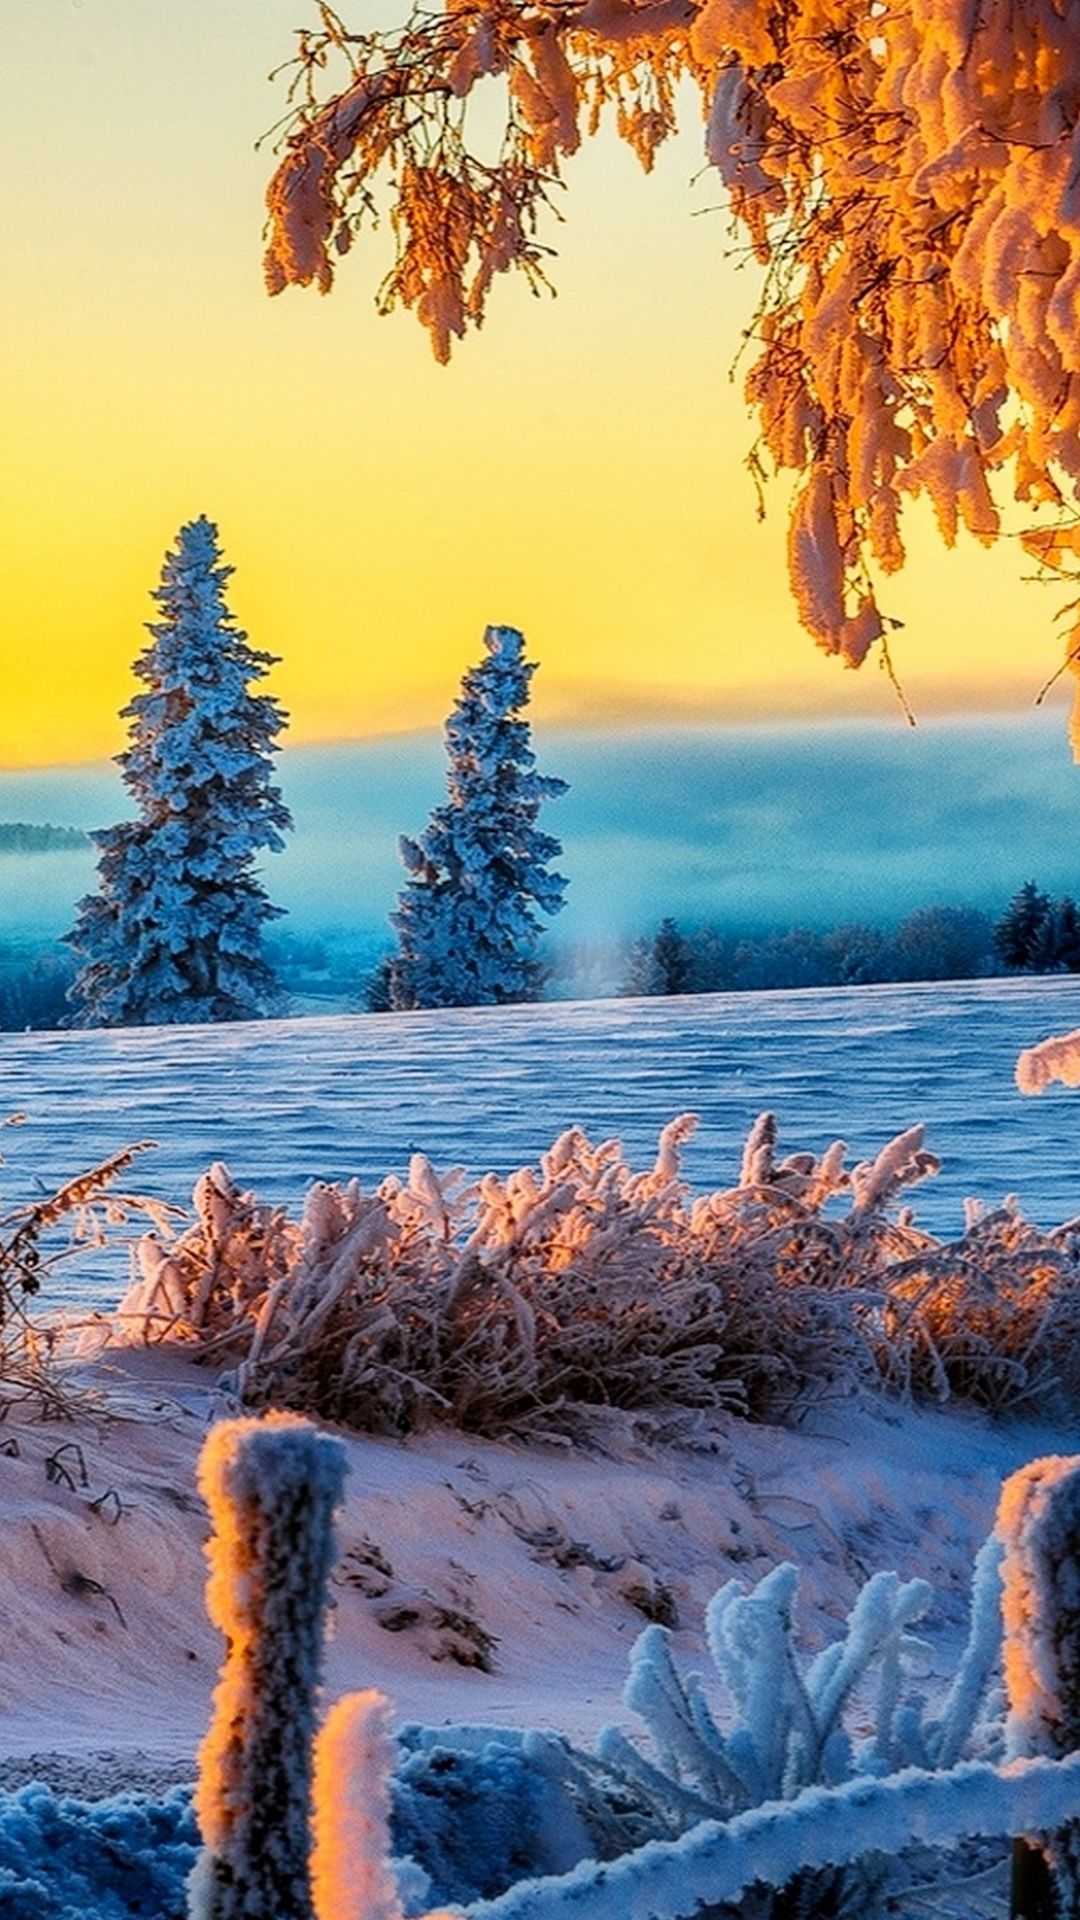 Wallpaper 3840×2160 winter tree 4K. Beautiful Winter Sunrise 4K